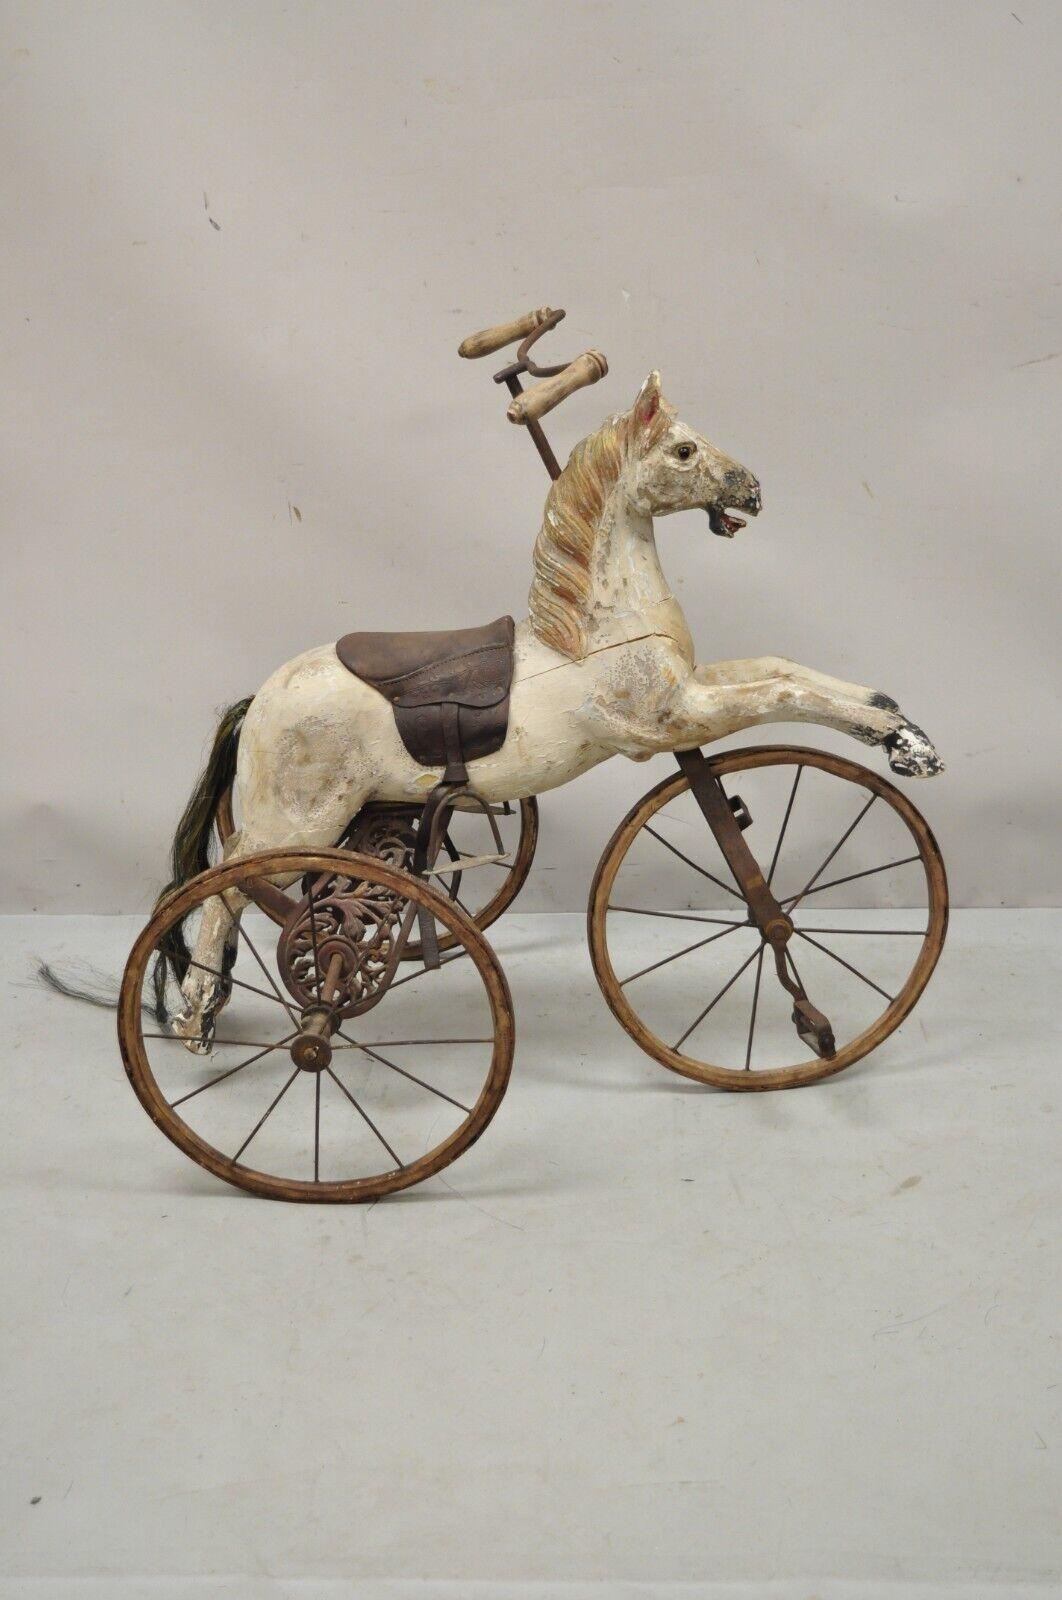 Vieux bois sculpté hobby horse tricycle en bois vélo. Caractéristiques de l'article 
vélo tricycle, cheval en bois sculpté, finition vieillie, ferrures en fer, oeil en verre, très bel article vintage, que l'on croit être une reproduction. Vers le